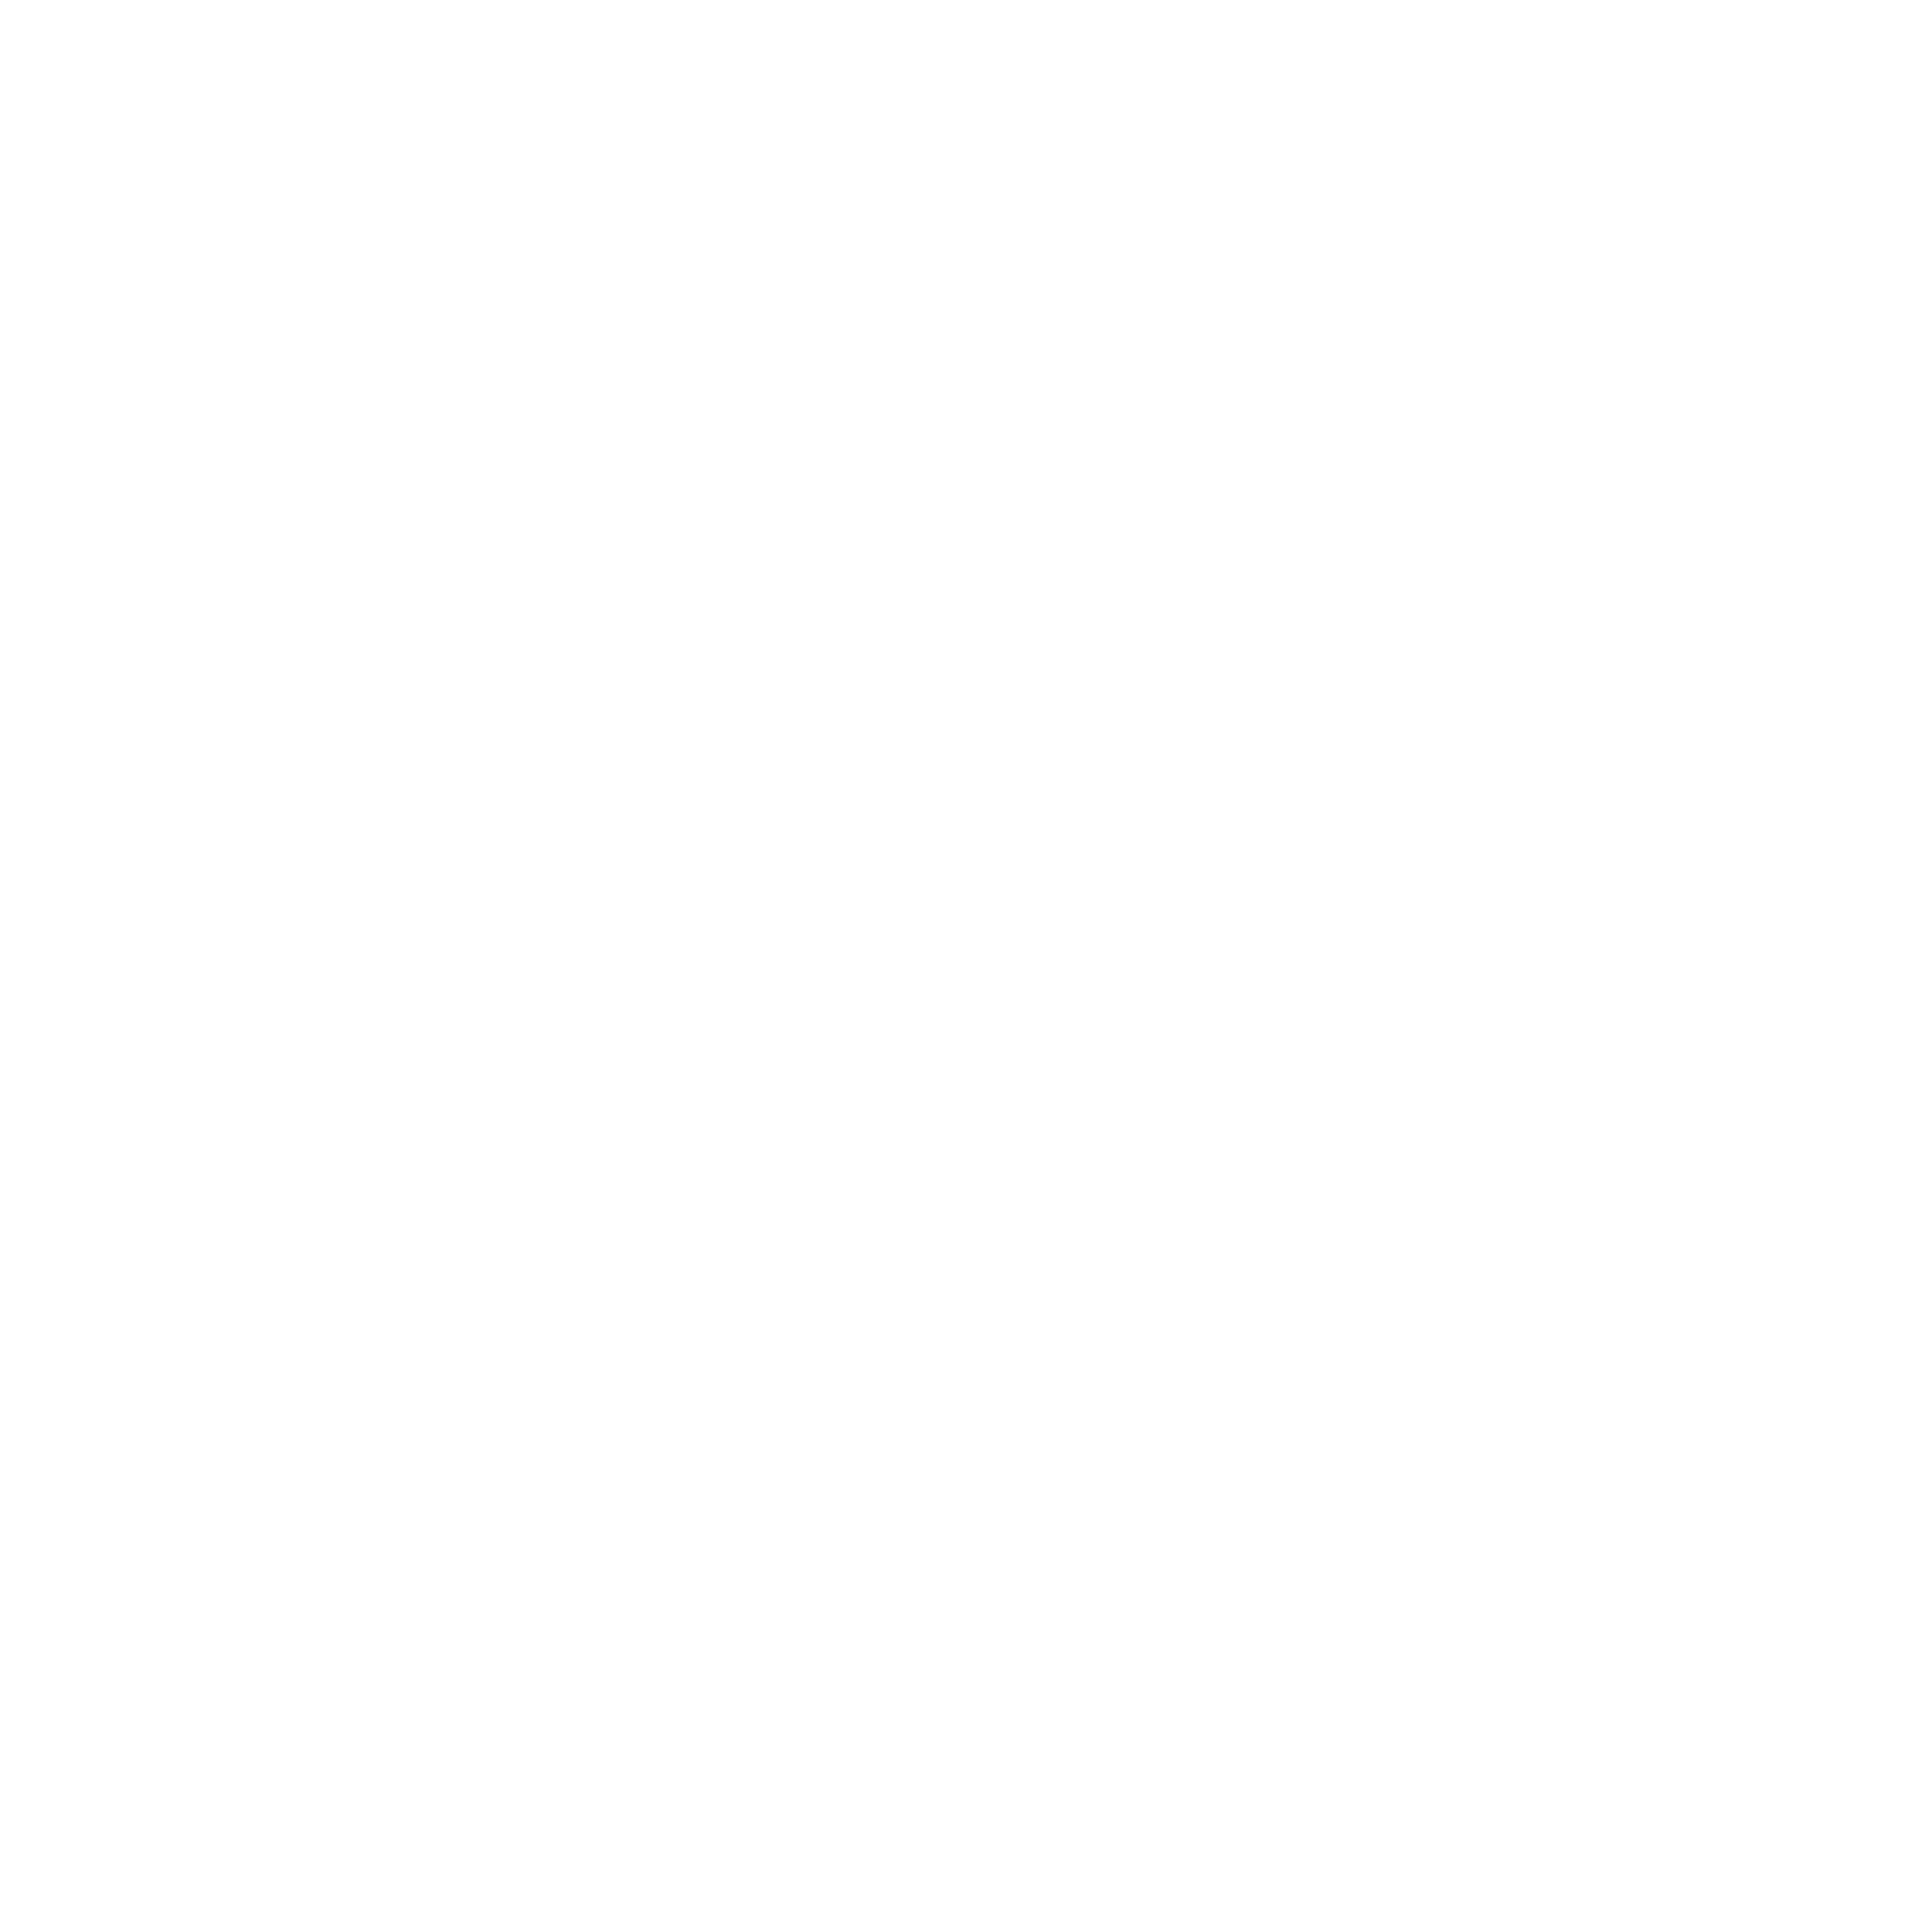 CarbonClick Carbon Offset Carbon Offset ∙ Carbon Offset Australian Made Australian Owned